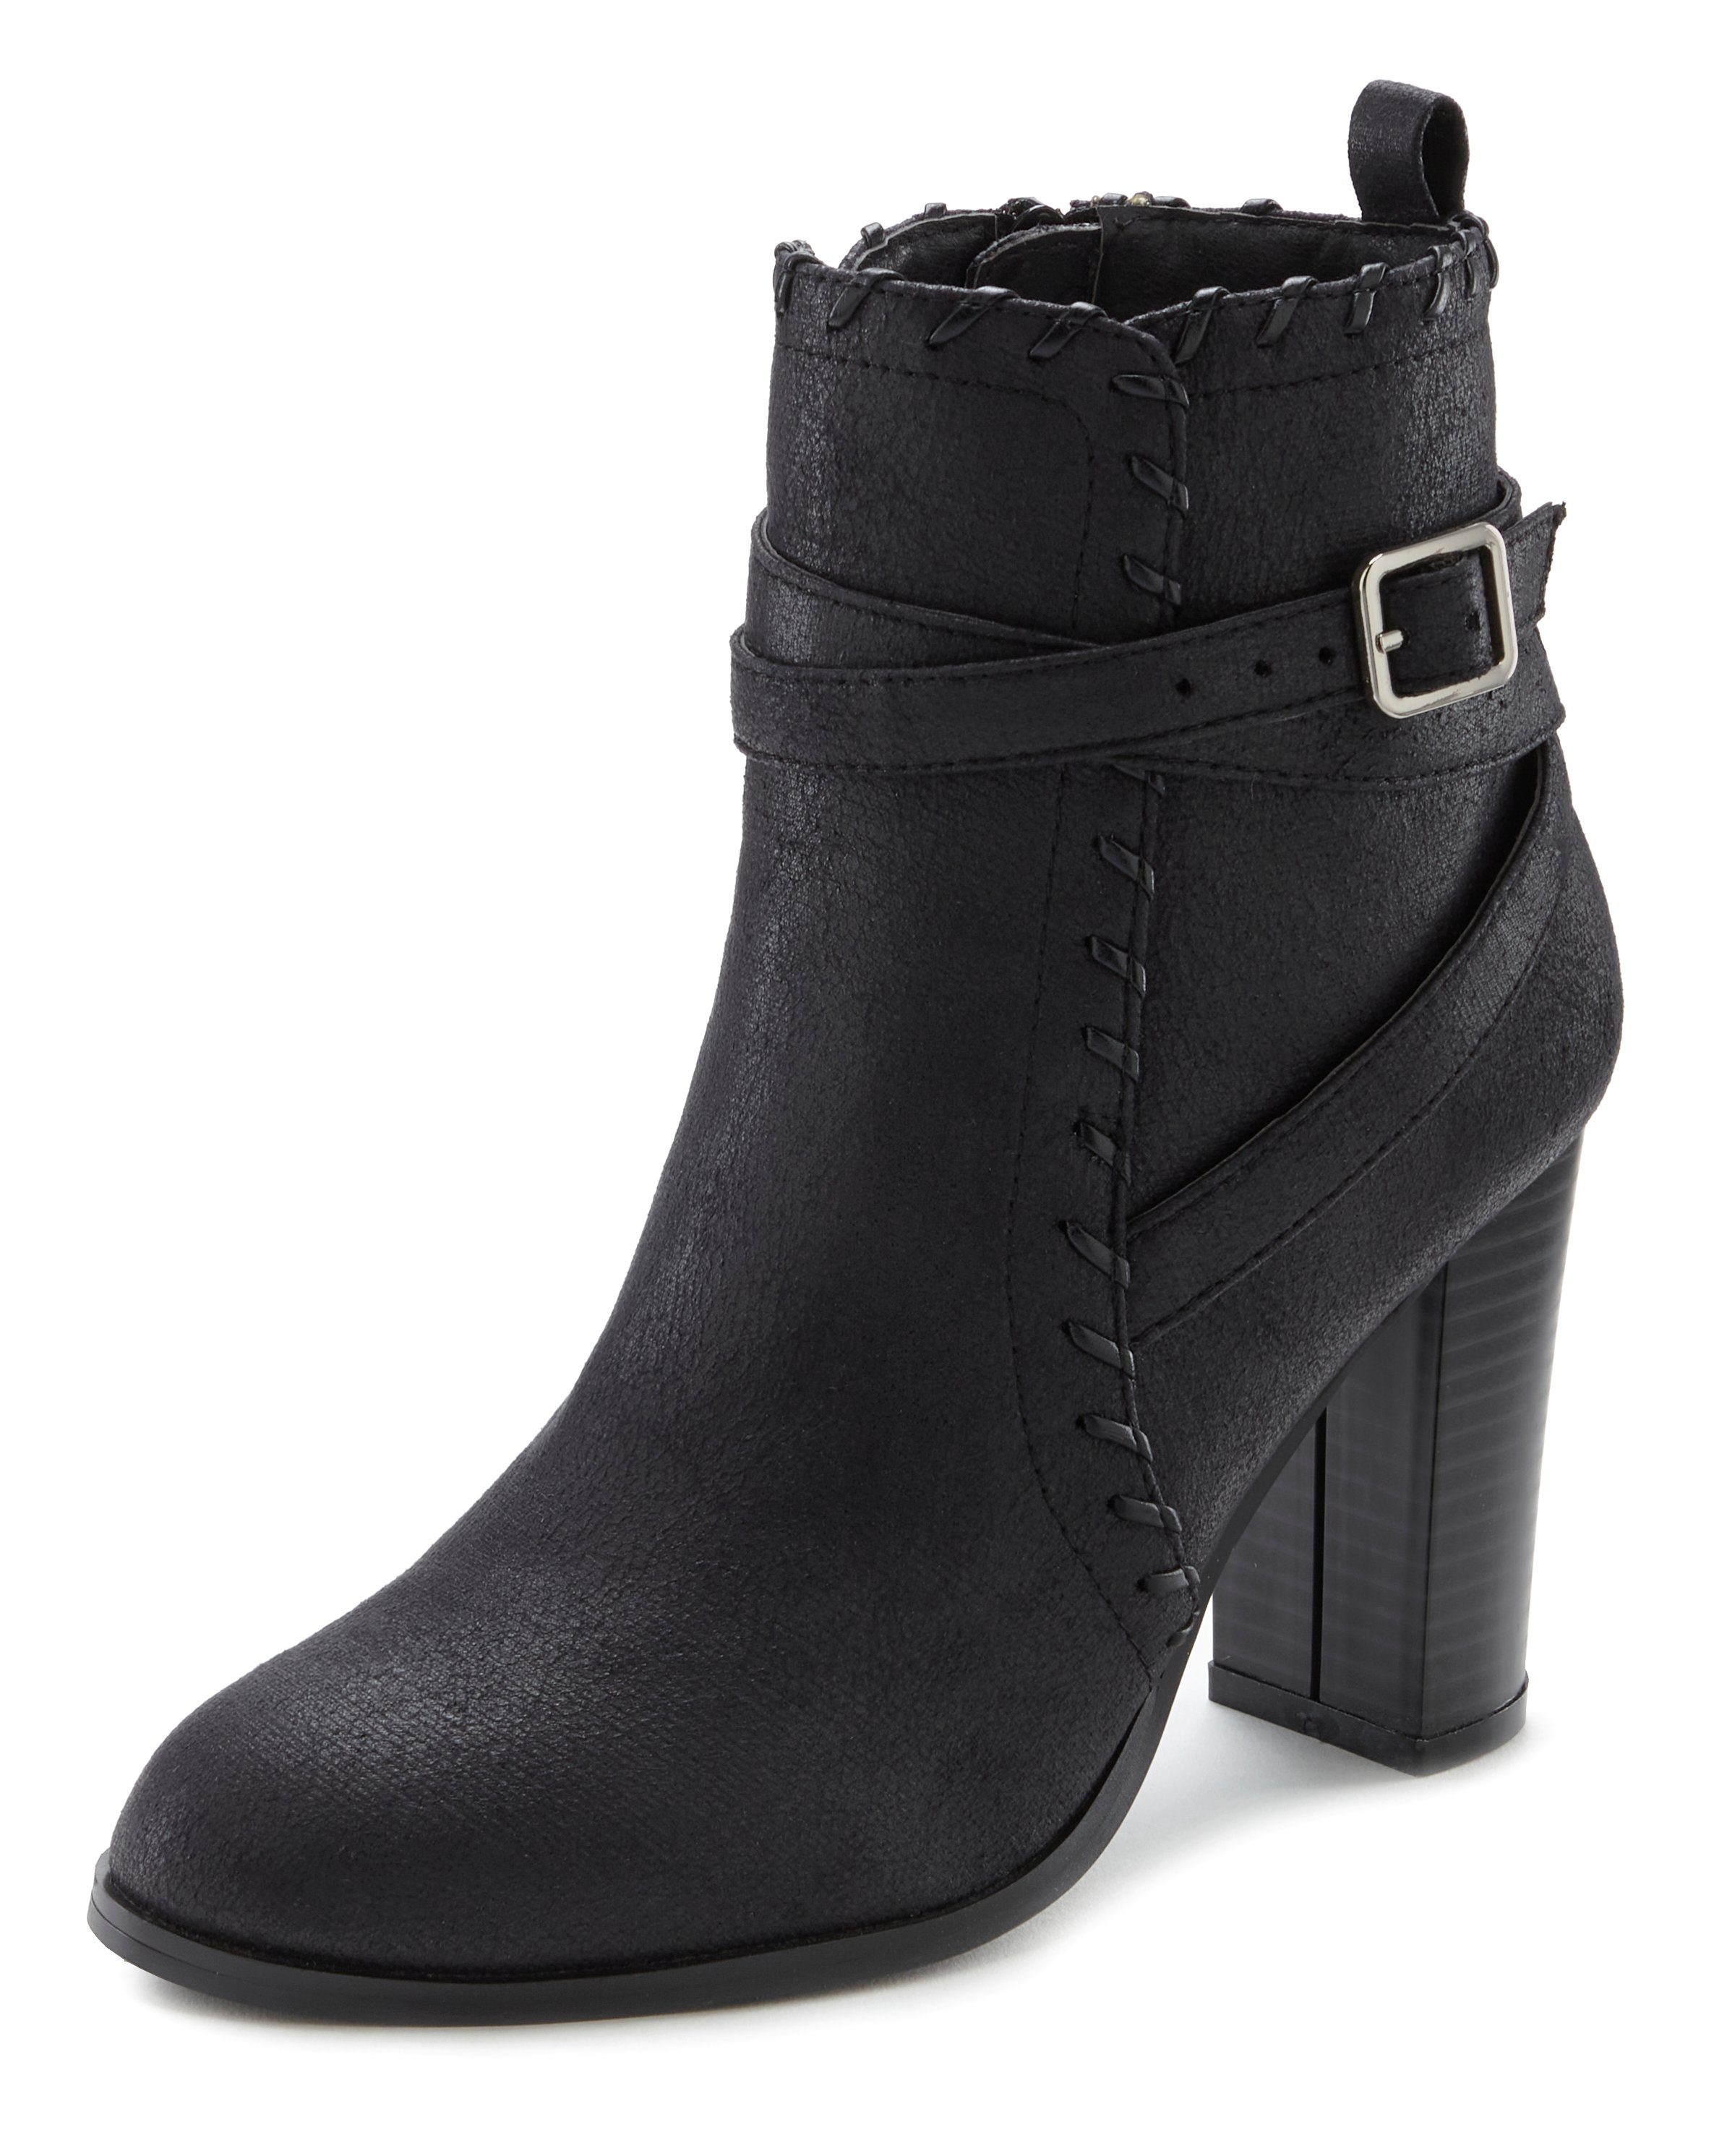 Boot, Blockabsatz, schwarz High-Heel-Stiefelette LASCANA Ankle mit Stiefel Vintage-Look bequemen im